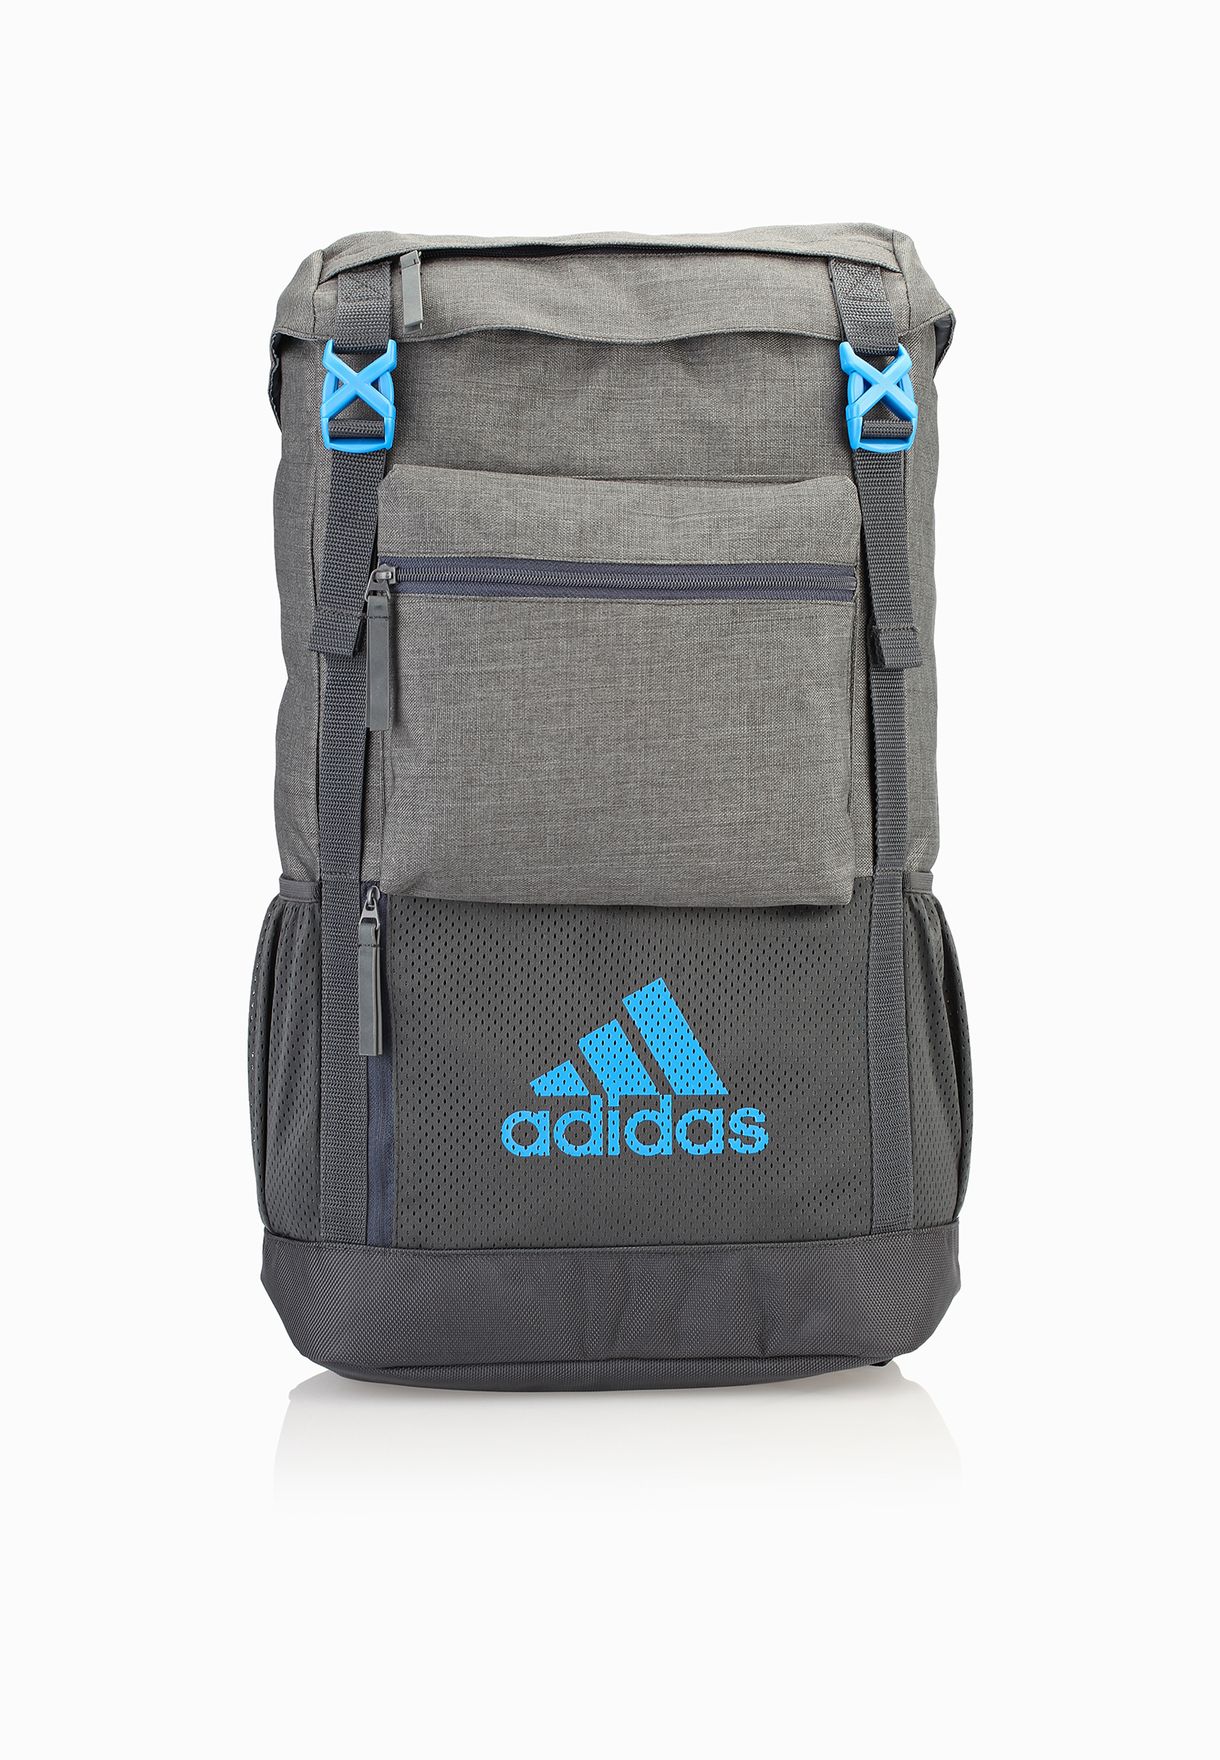 adidas nga 2.0 backpack